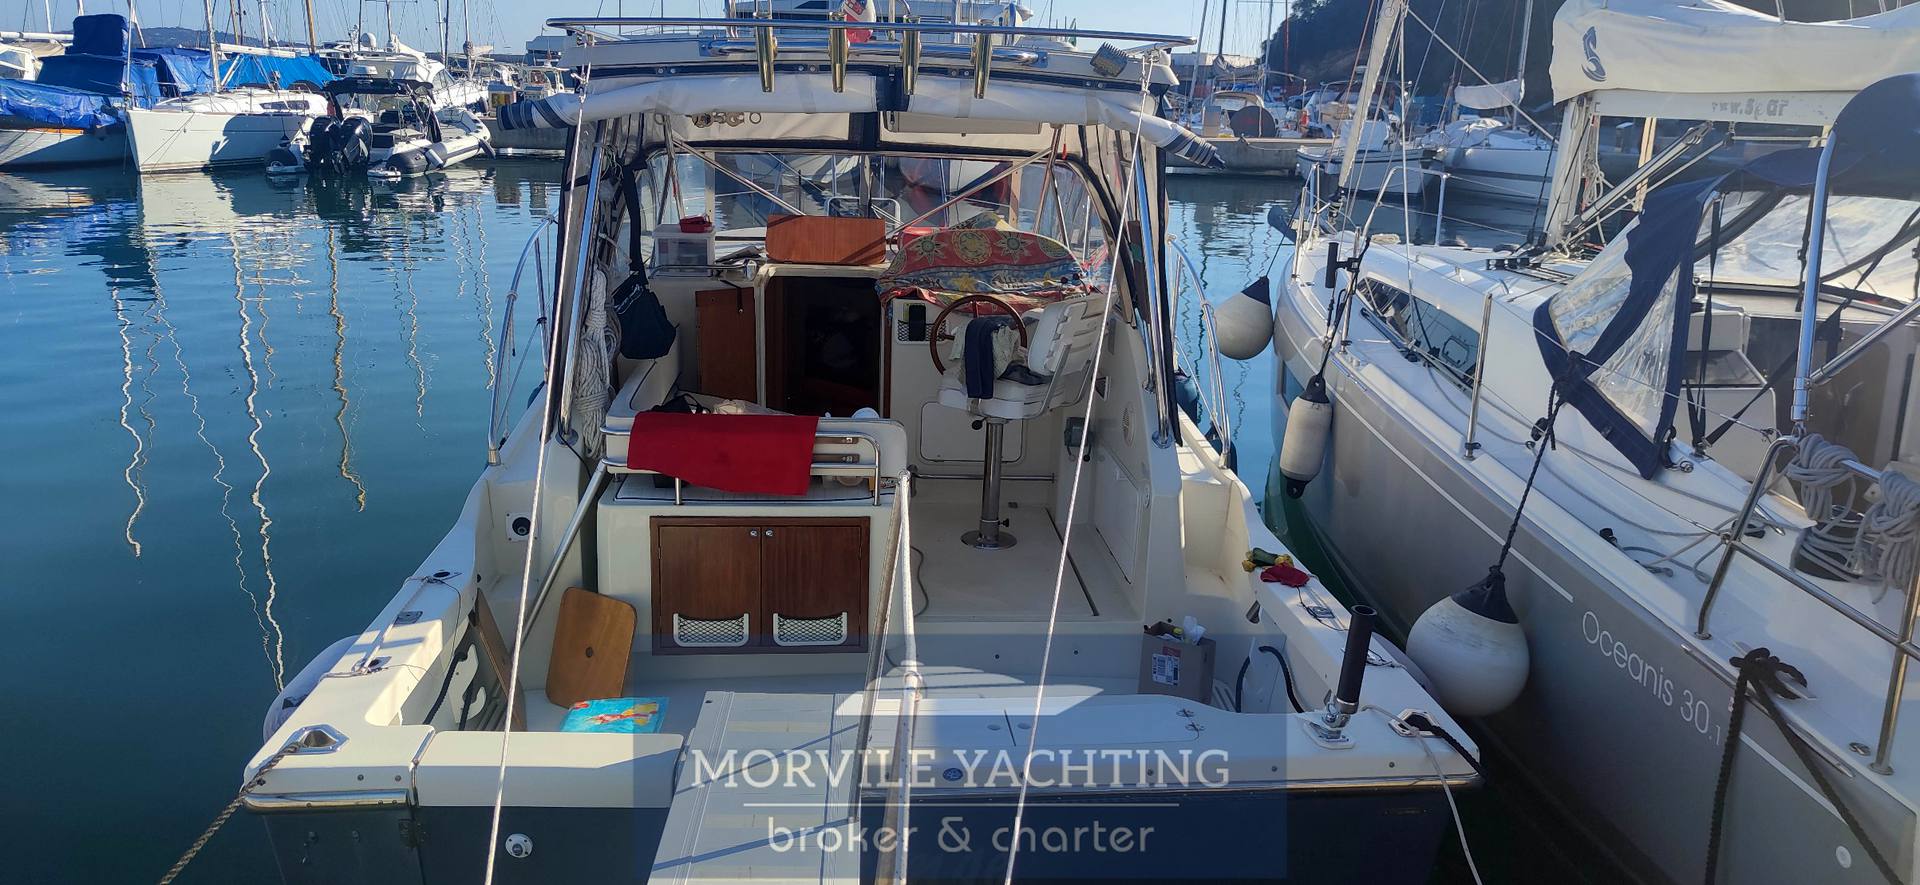 TUCCOLI Moby dick t280 Barca a motore usata in vendita